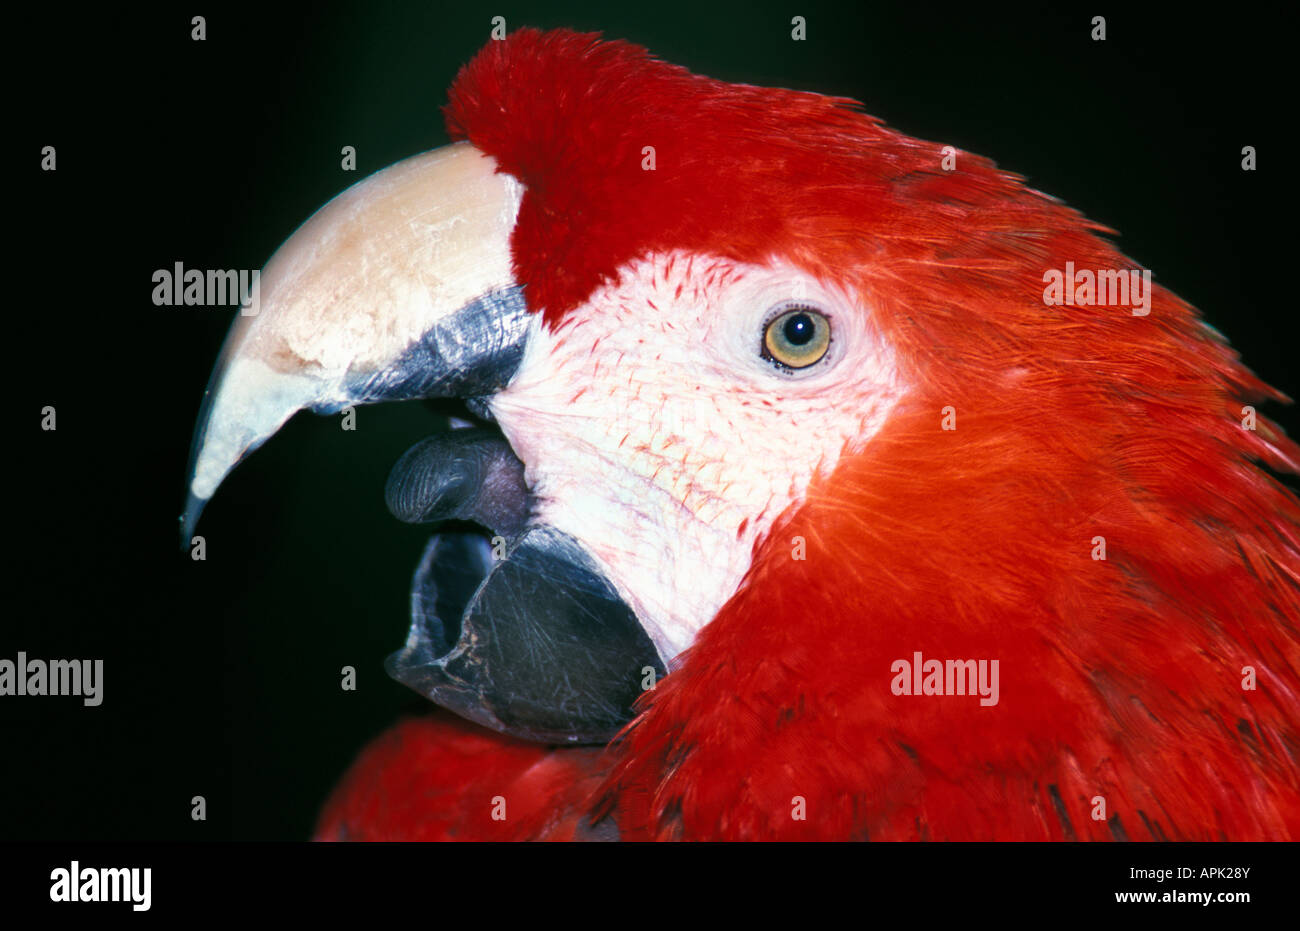 Portrait d Ara rouge Ara Macao allein Amerika biogeographischen Region biogeographischen Gebieten Vogel Vögel Carmine Top Akeleien Farbe Farben Col Stockfoto